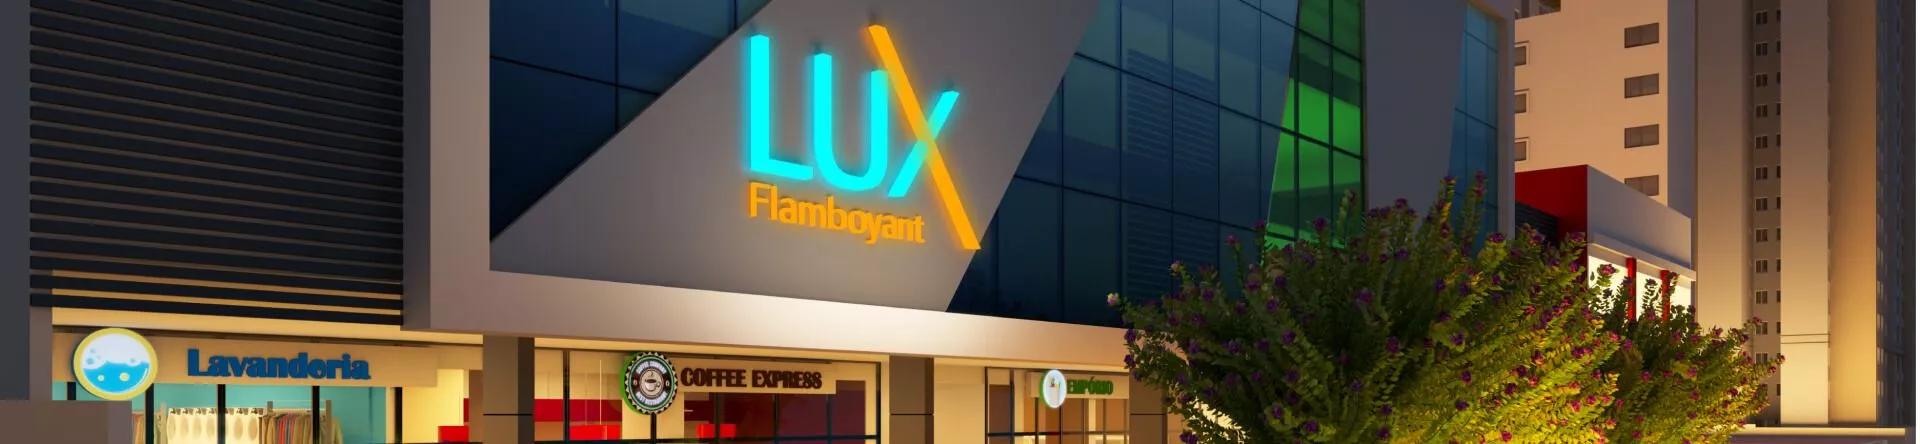 Fachada do Edifício Lux Flamboyant, da Elmo Construtora (1)